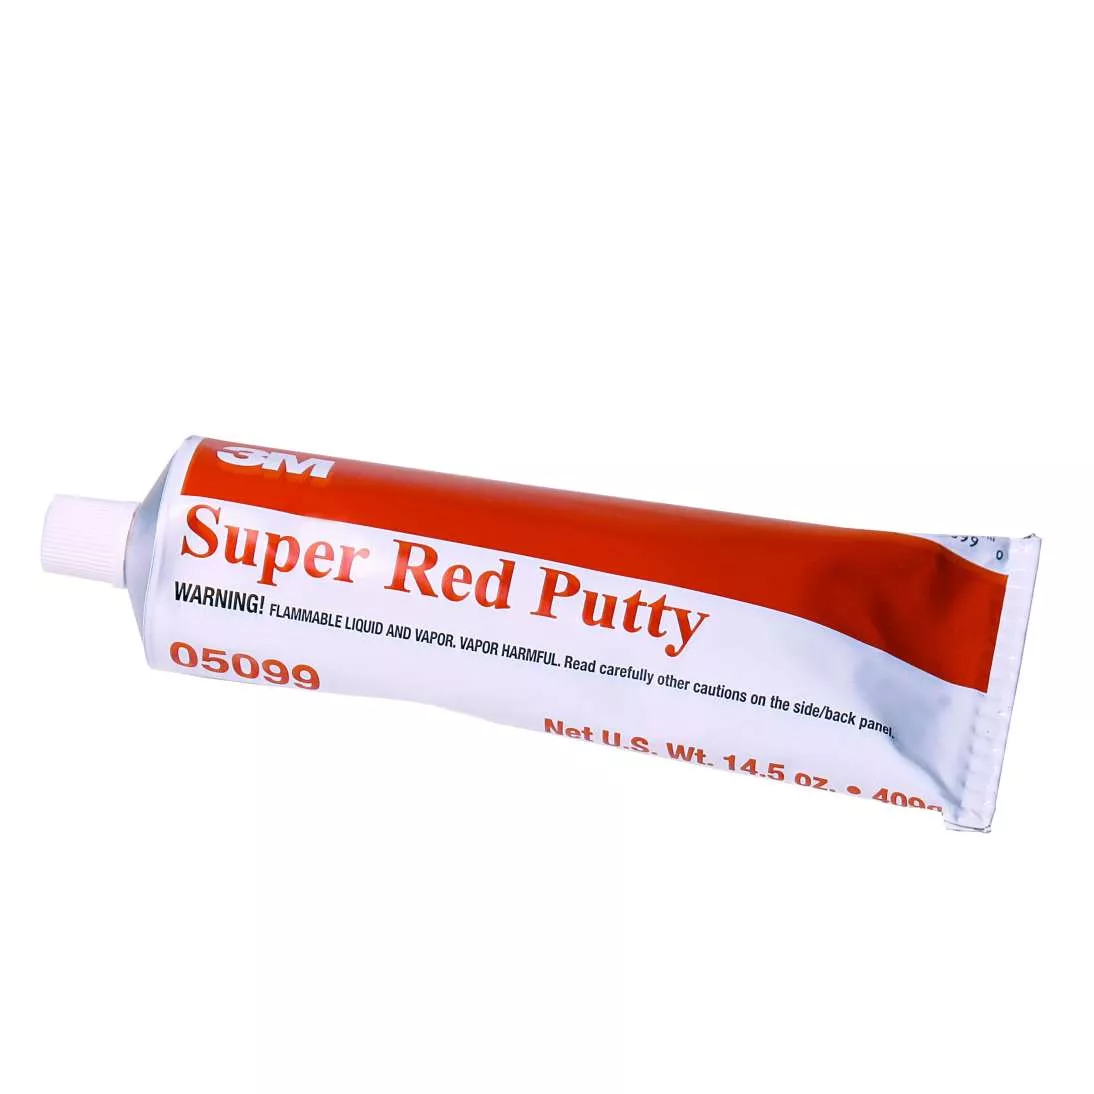 3M™ Super Red Putty, 05099, 14.5 oz, 12 tubes per case